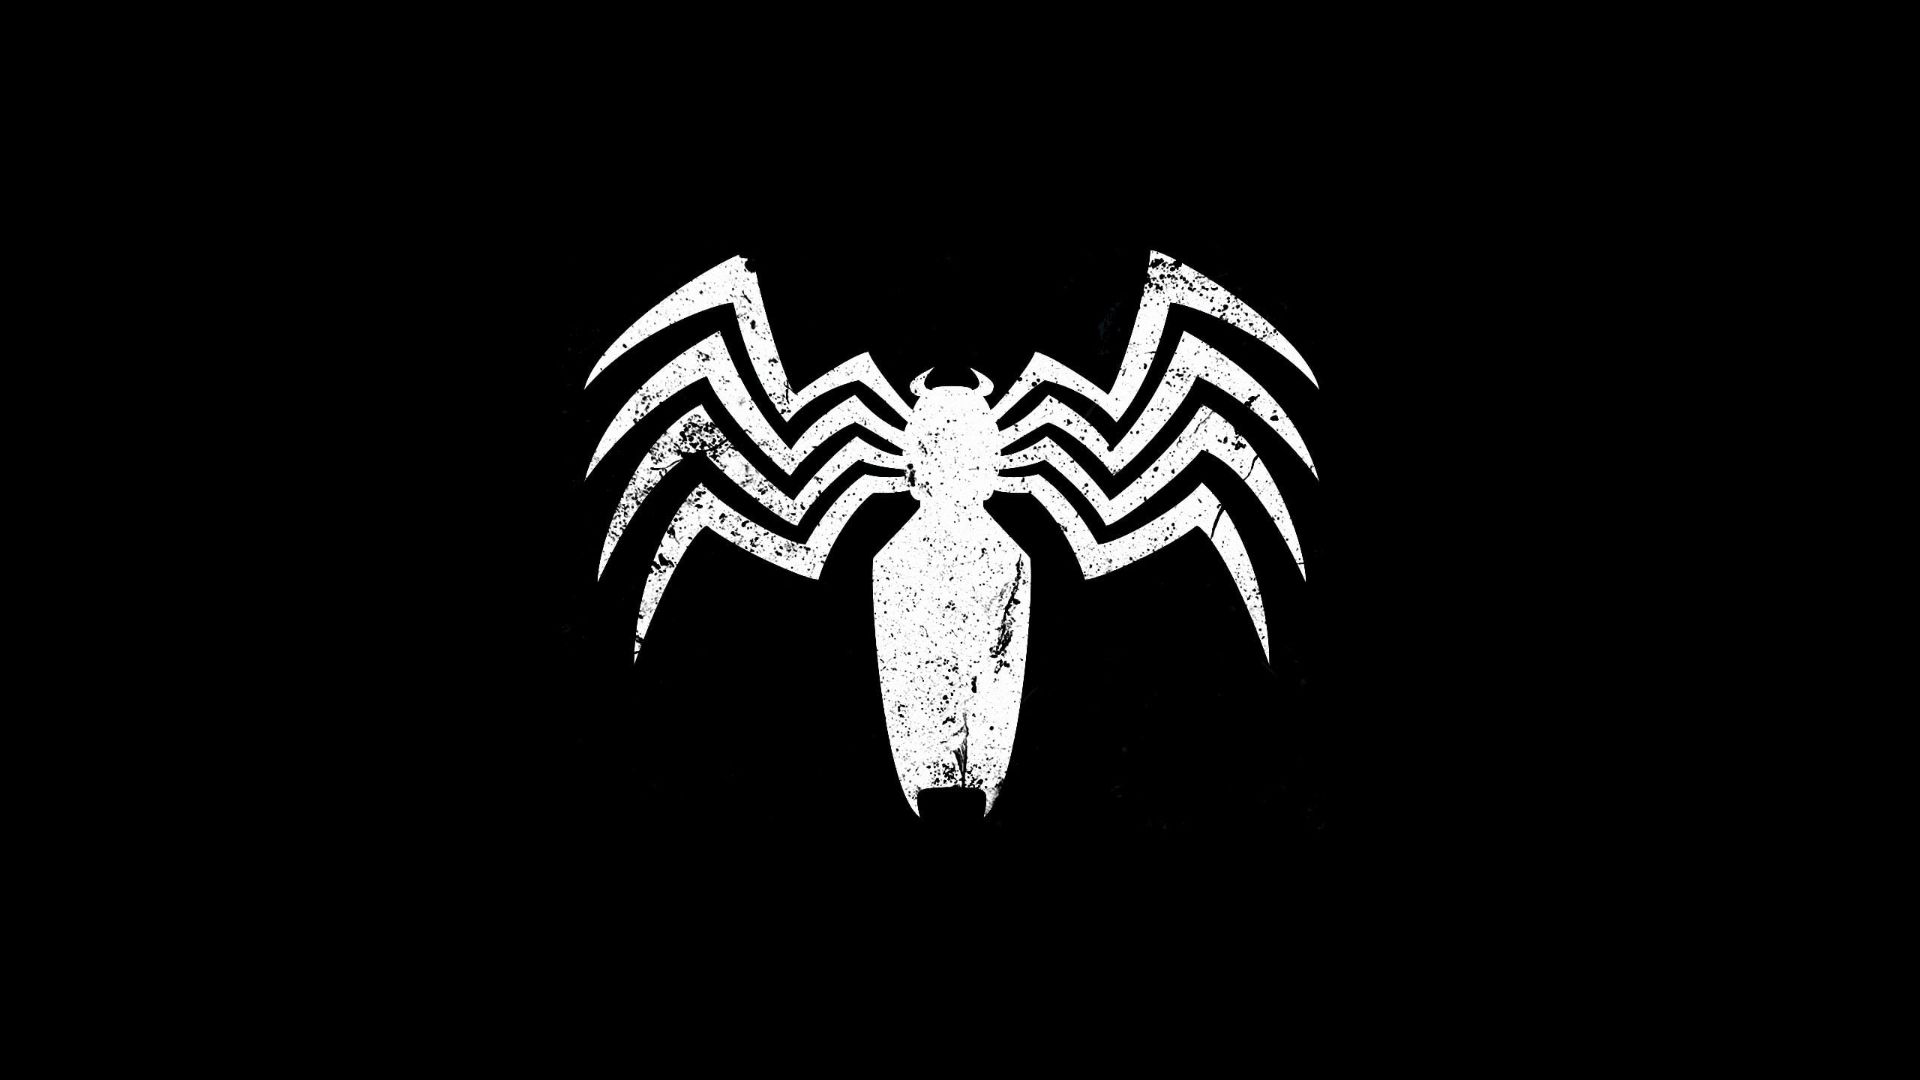 Spider Man Logo Background Images